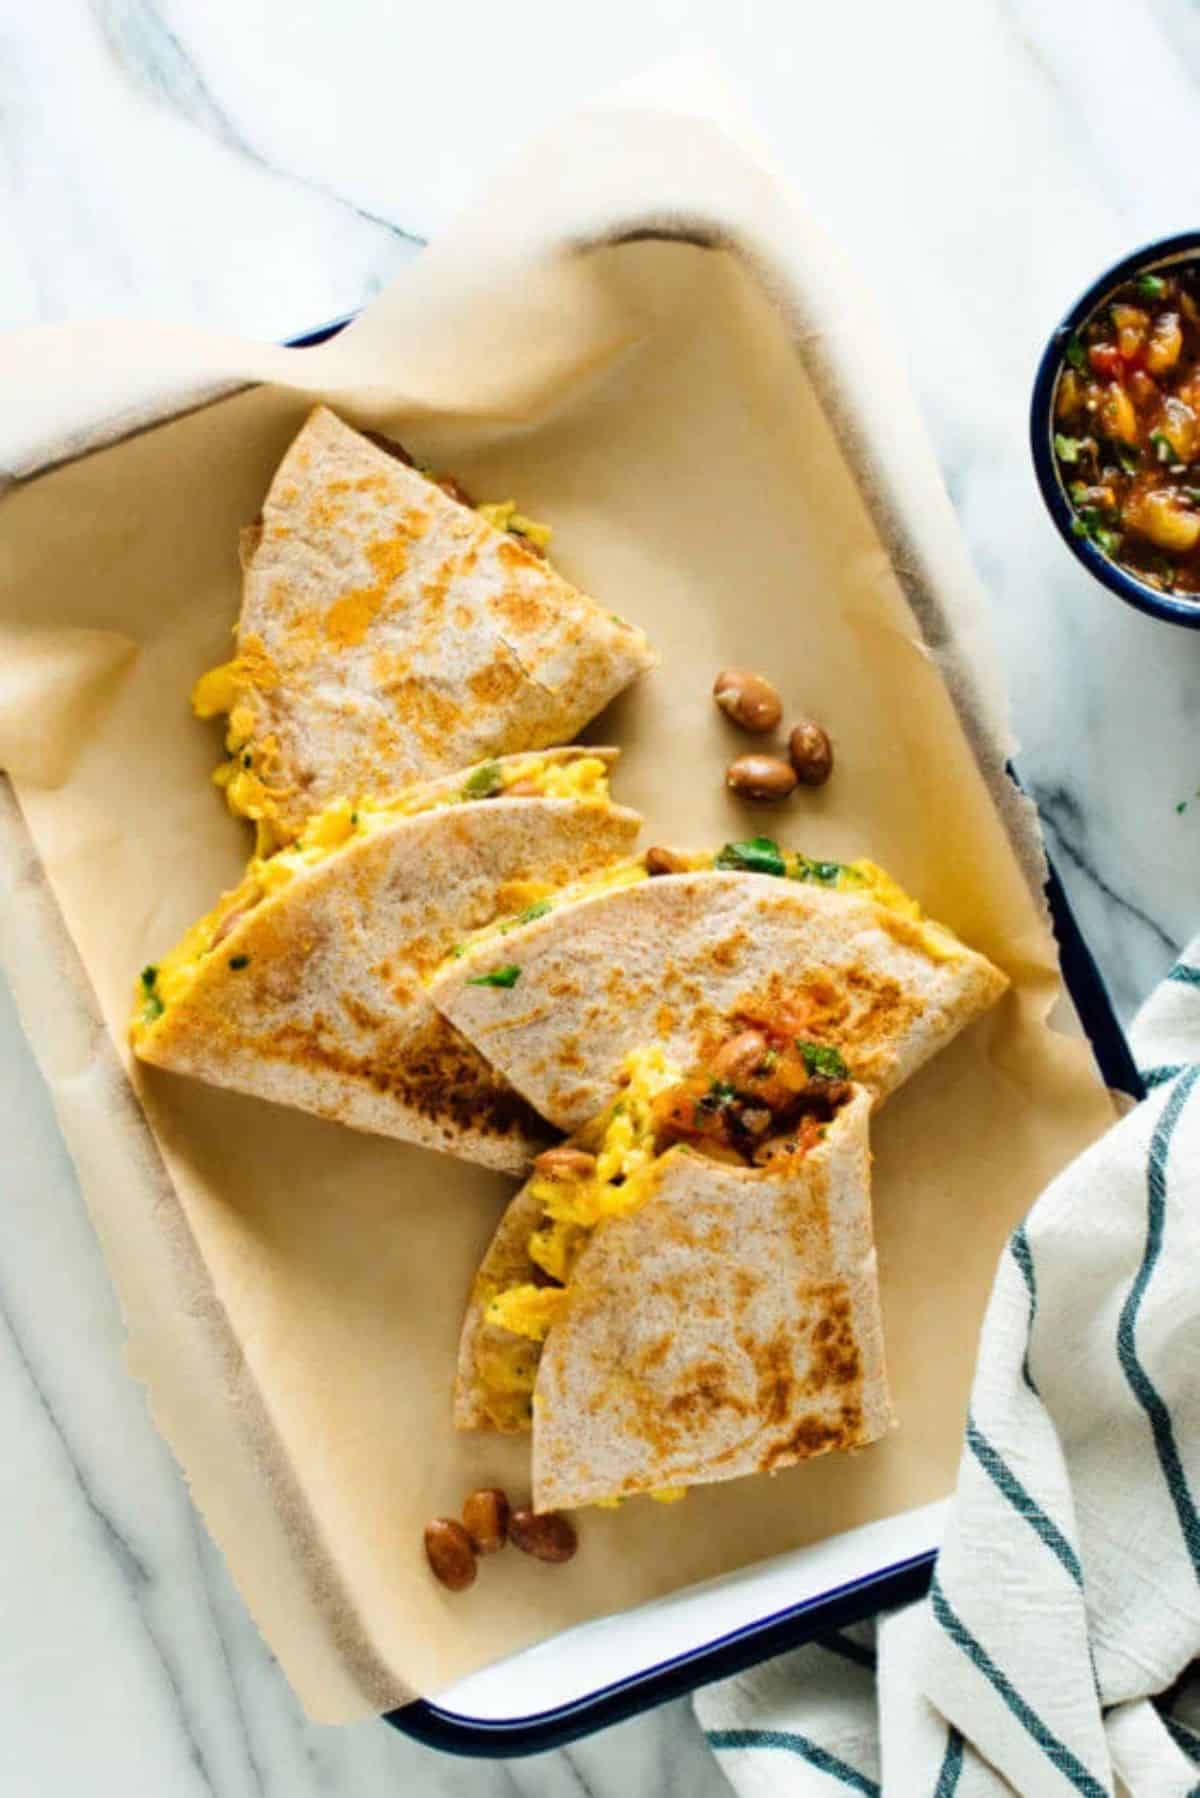 Crunchy breakfast quesadillas on a tray.